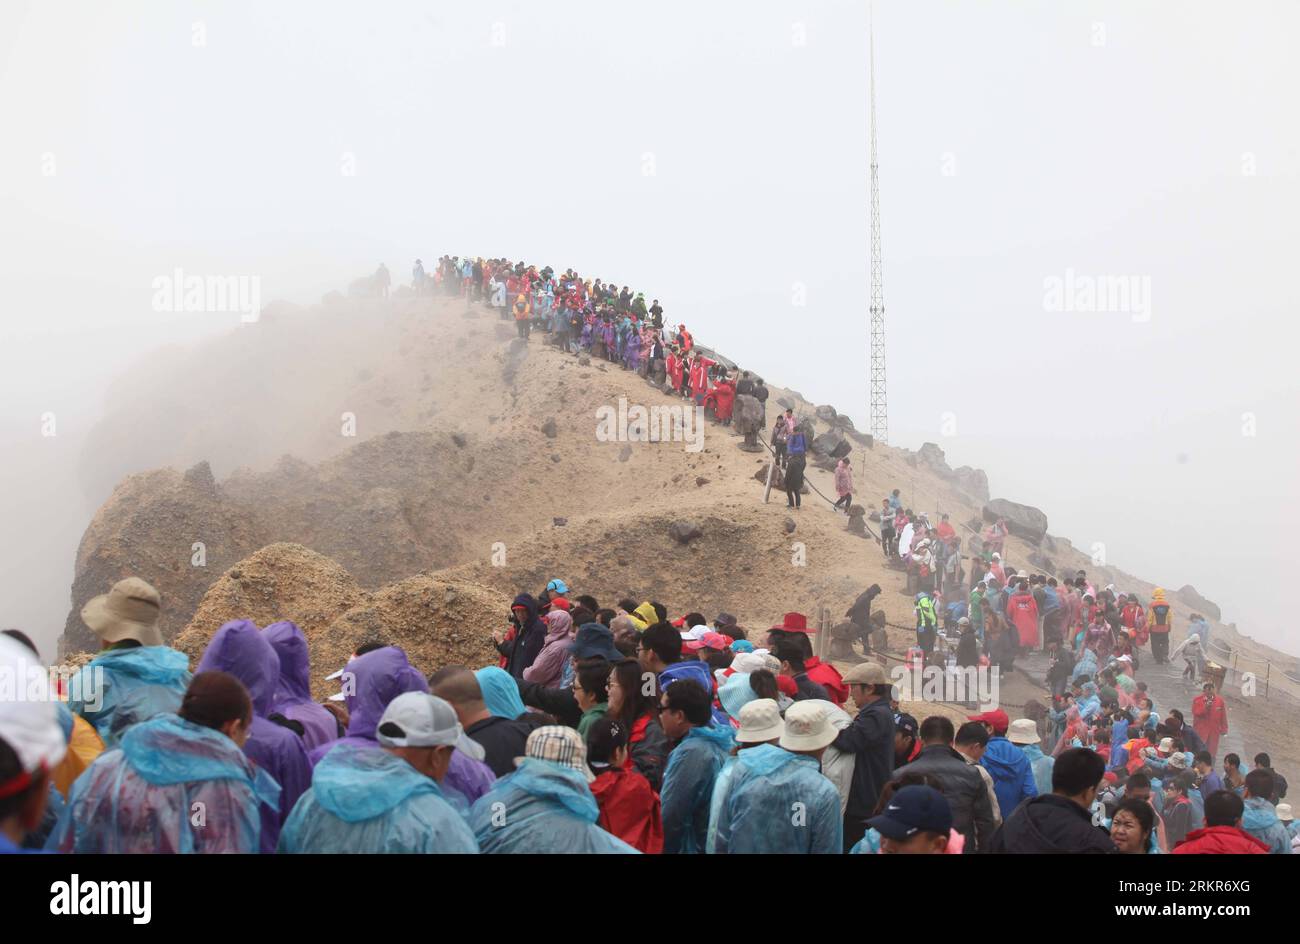 Bildnummer: 58137000  Datum: 21.06.2012  Copyright: imago/Xinhua (120622) -- YANBIAN, June 22, 2012 (Xinhua) -- Tourists wait for dissipation of fog to see the Tianchi Lake on Changbai Mountain in Yanbian Korean Autonomous Prefecture, northeast China s Jilin Province, June 21, 2012. (Xinhua/Liang Zhiqiang) (lfj) CHINA-JILIN-CHANGBAI MOUNTAIN-TOURISM (CN) PUBLICATIONxNOTxINxCHN Reisen Asien China xjh x0x 2012 quer      58137000 Date 21 06 2012 Copyright Imago XINHUA  Yanbian June 22 2012 XINHUA tourists Wait for dissipation of Fog to Lake The Tianchi Lake ON Changbai Mountain in Yanbian Korean Stock Photo